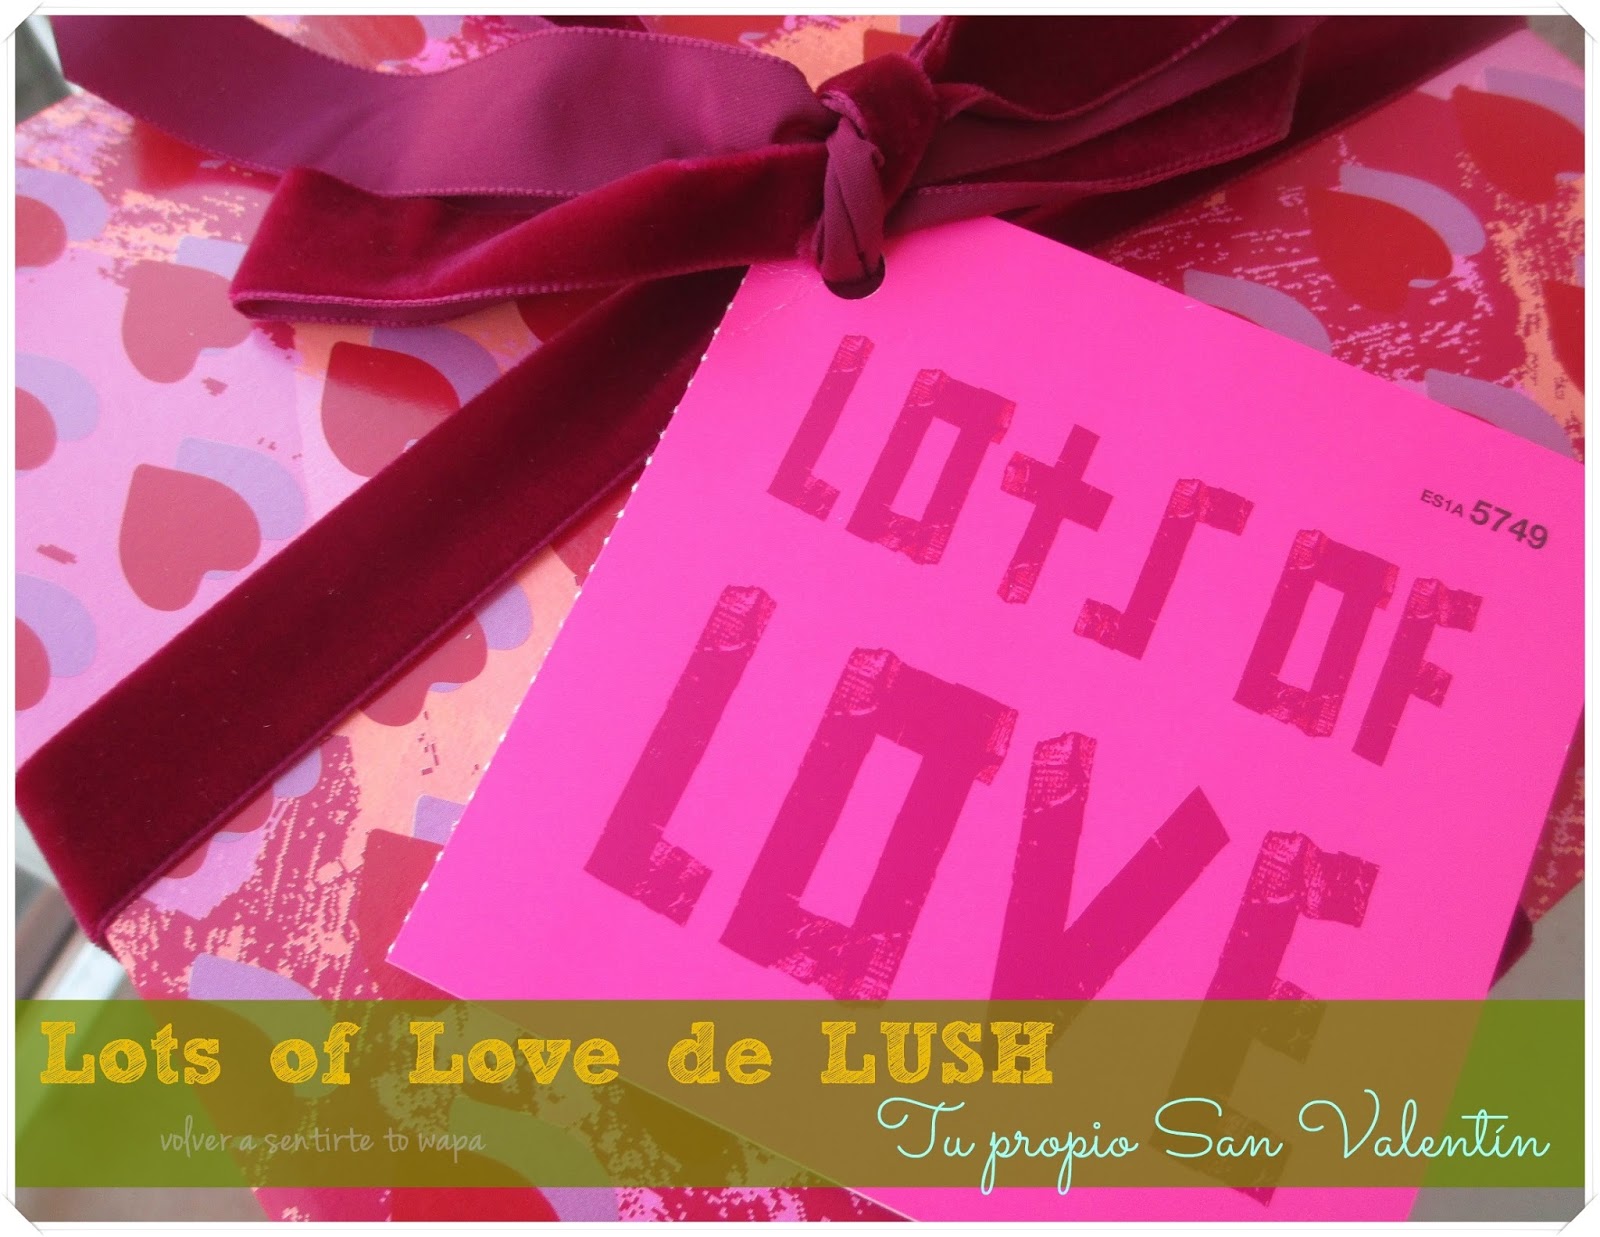 LOTS OF LOVE 'tu propio San Valentín' de LUSH